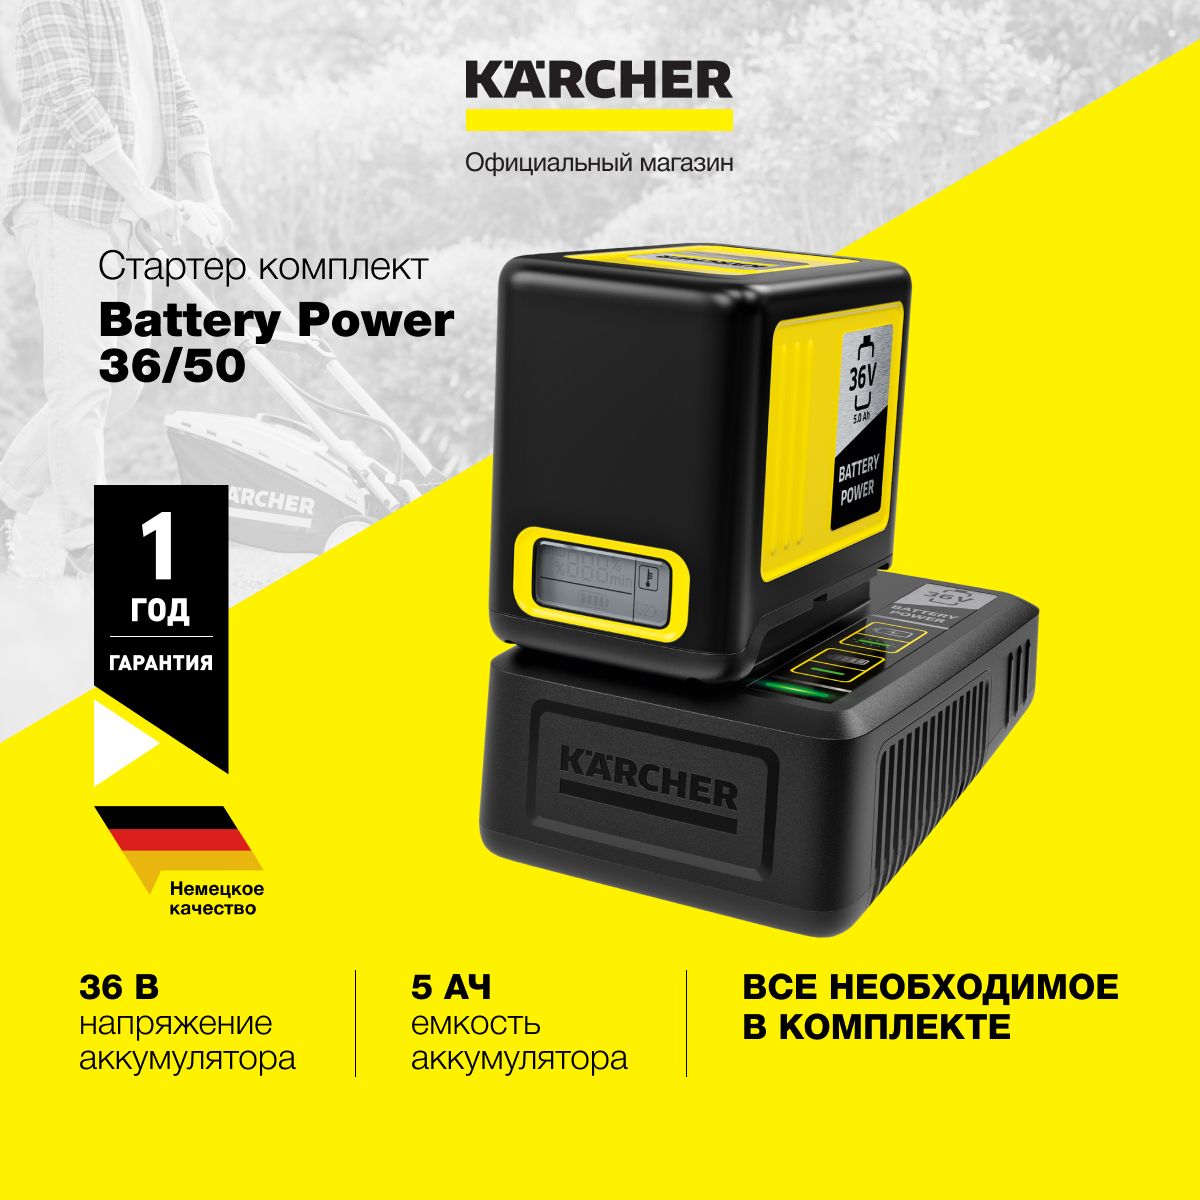 Karcher battery